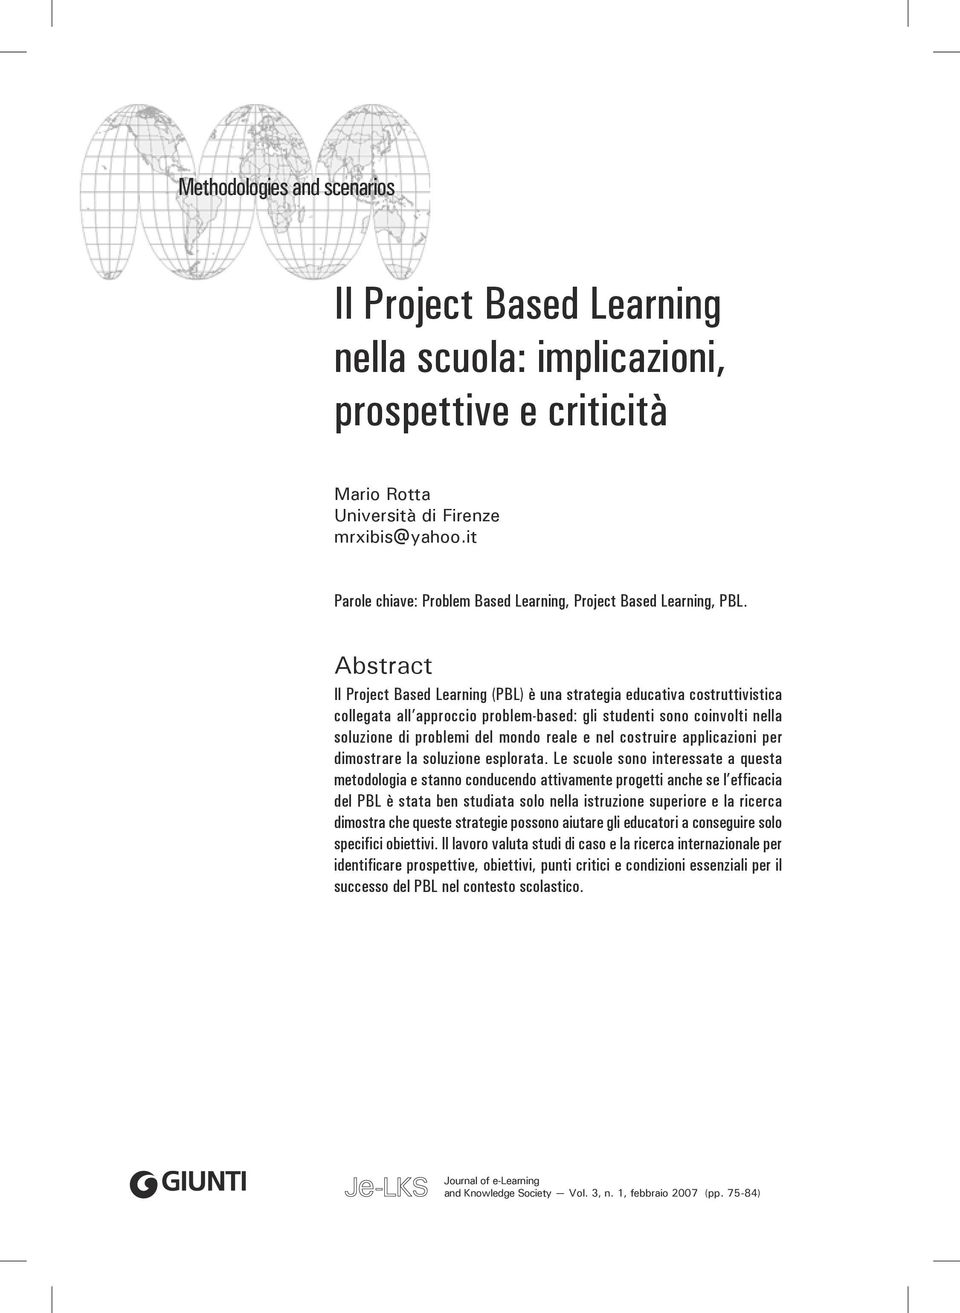 Abstract Il Project Based Learning (PBL) è una strategia educativa costruttivistica collegata all approccio problem-based: gli studenti sono coinvolti nella soluzione di problemi del mondo reale e